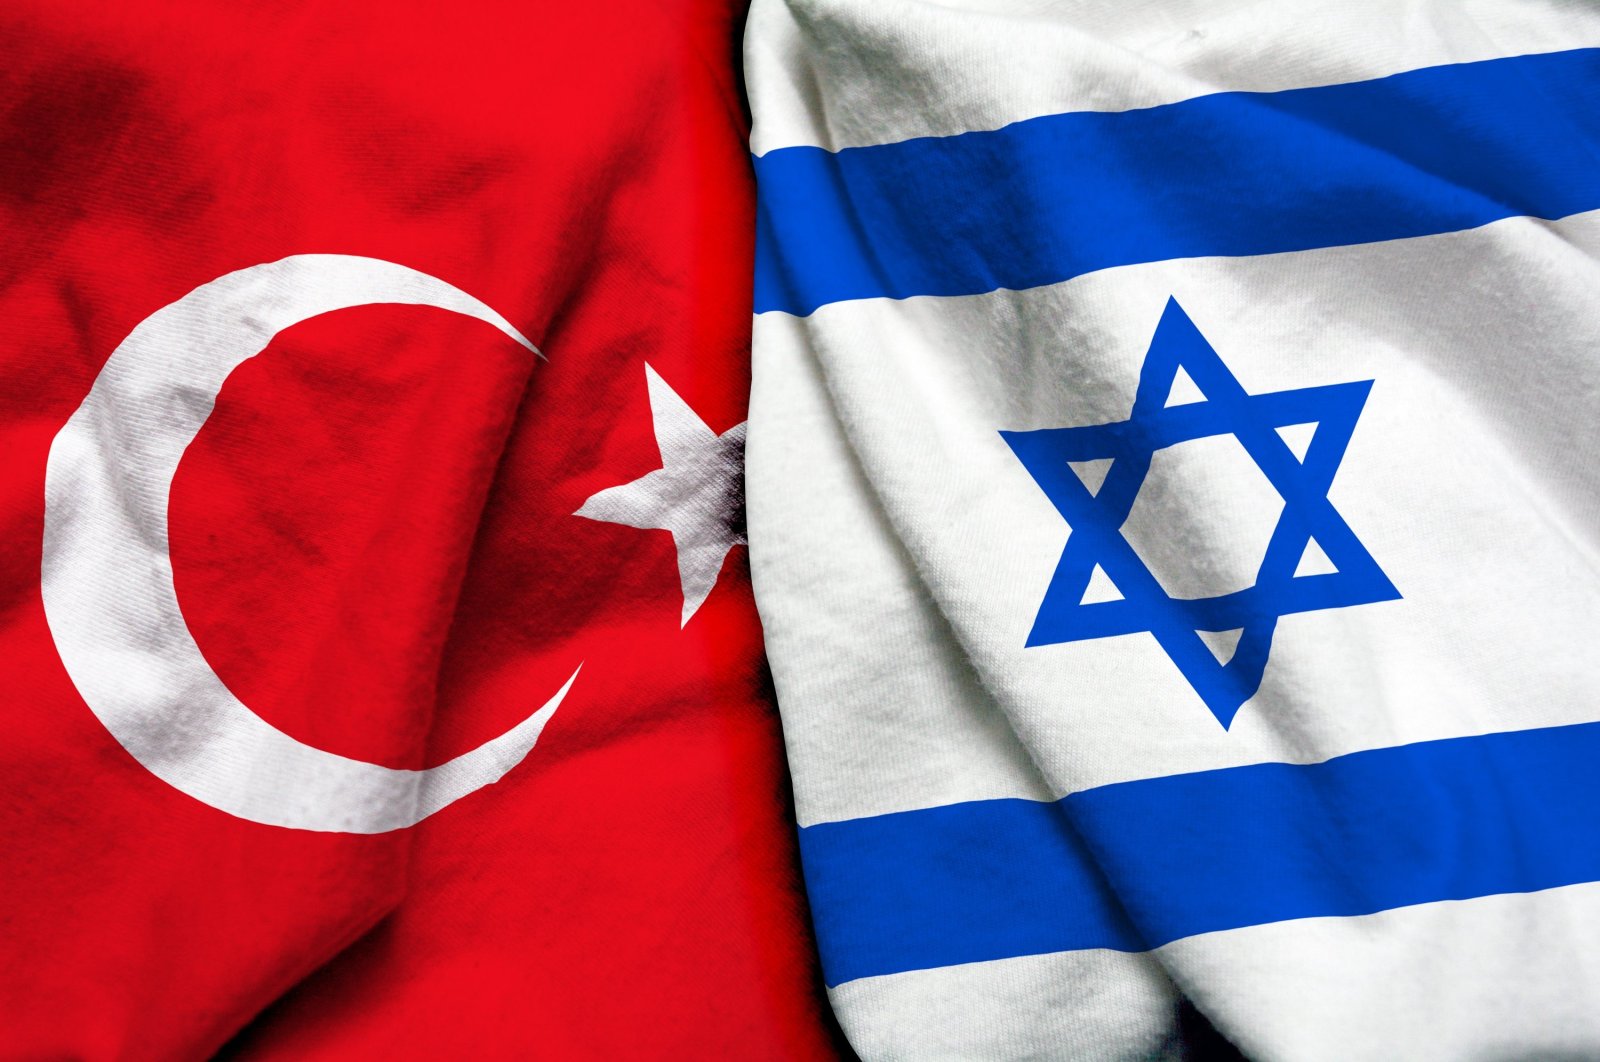 Erdoğan, Herzog membahas hubungan Turki-Israel, masalah regional